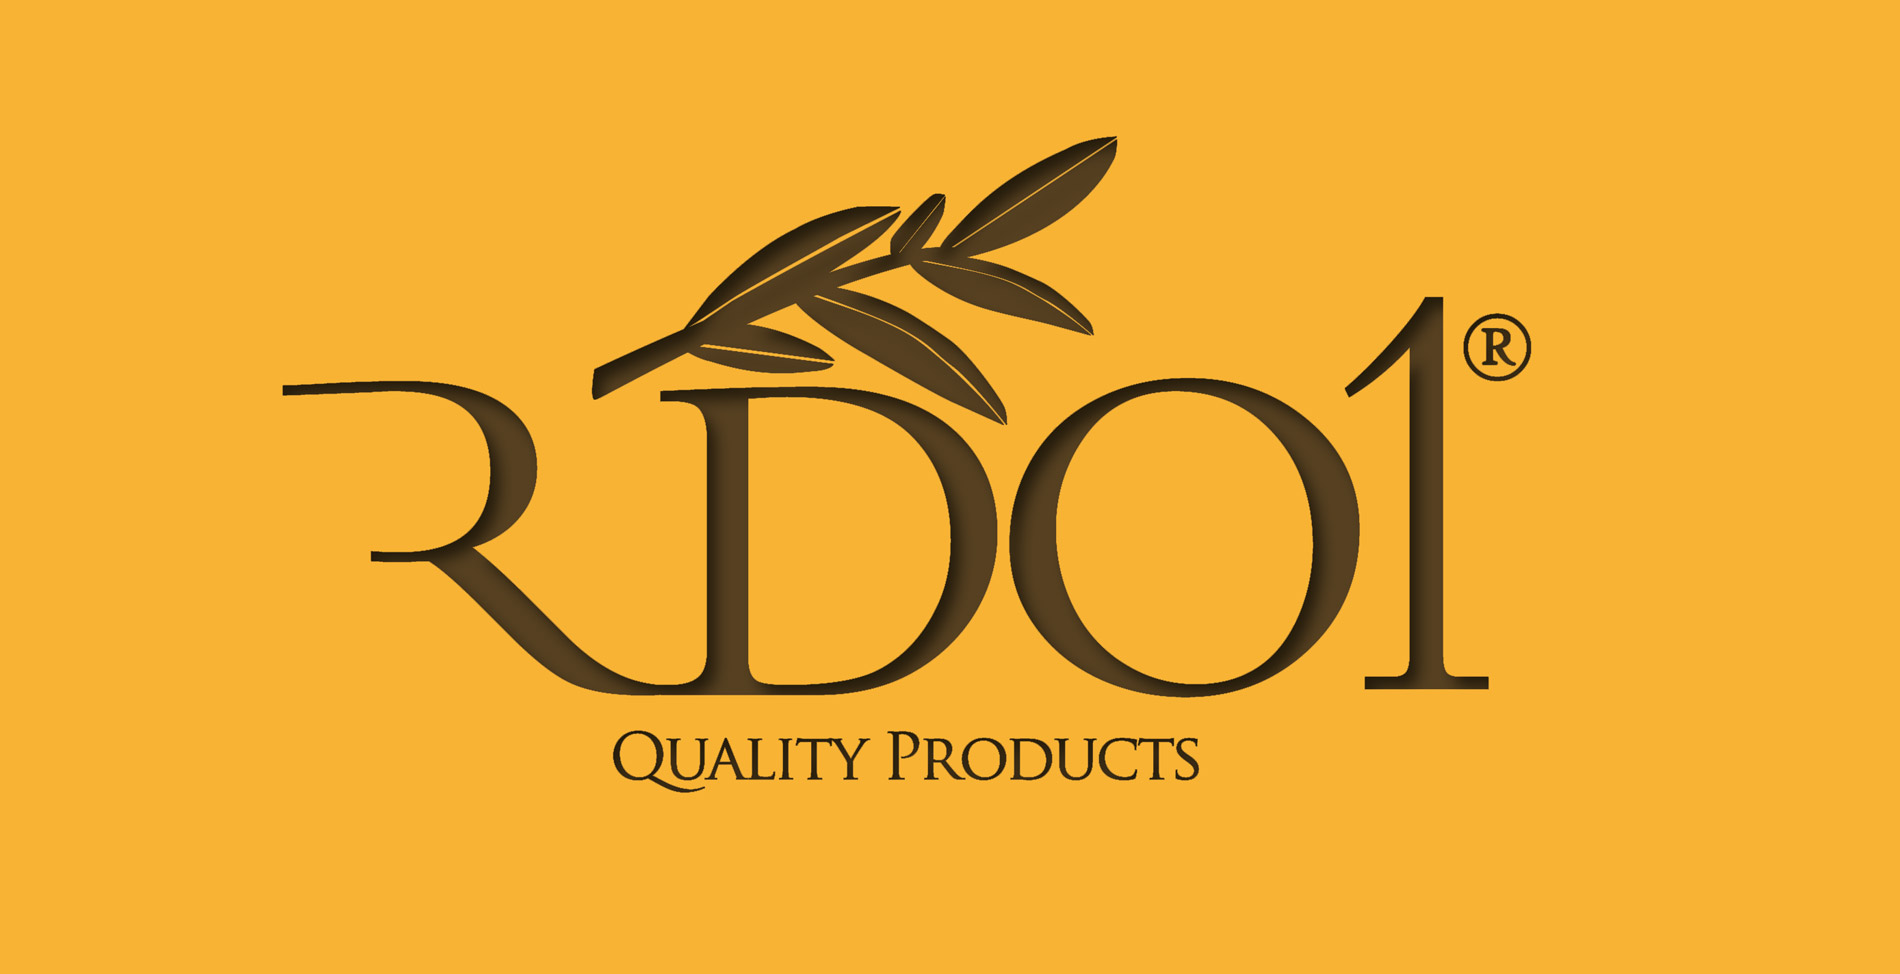 Portfolio of logo and brand design design works for extra virgin olive oil manufacturer and marketer